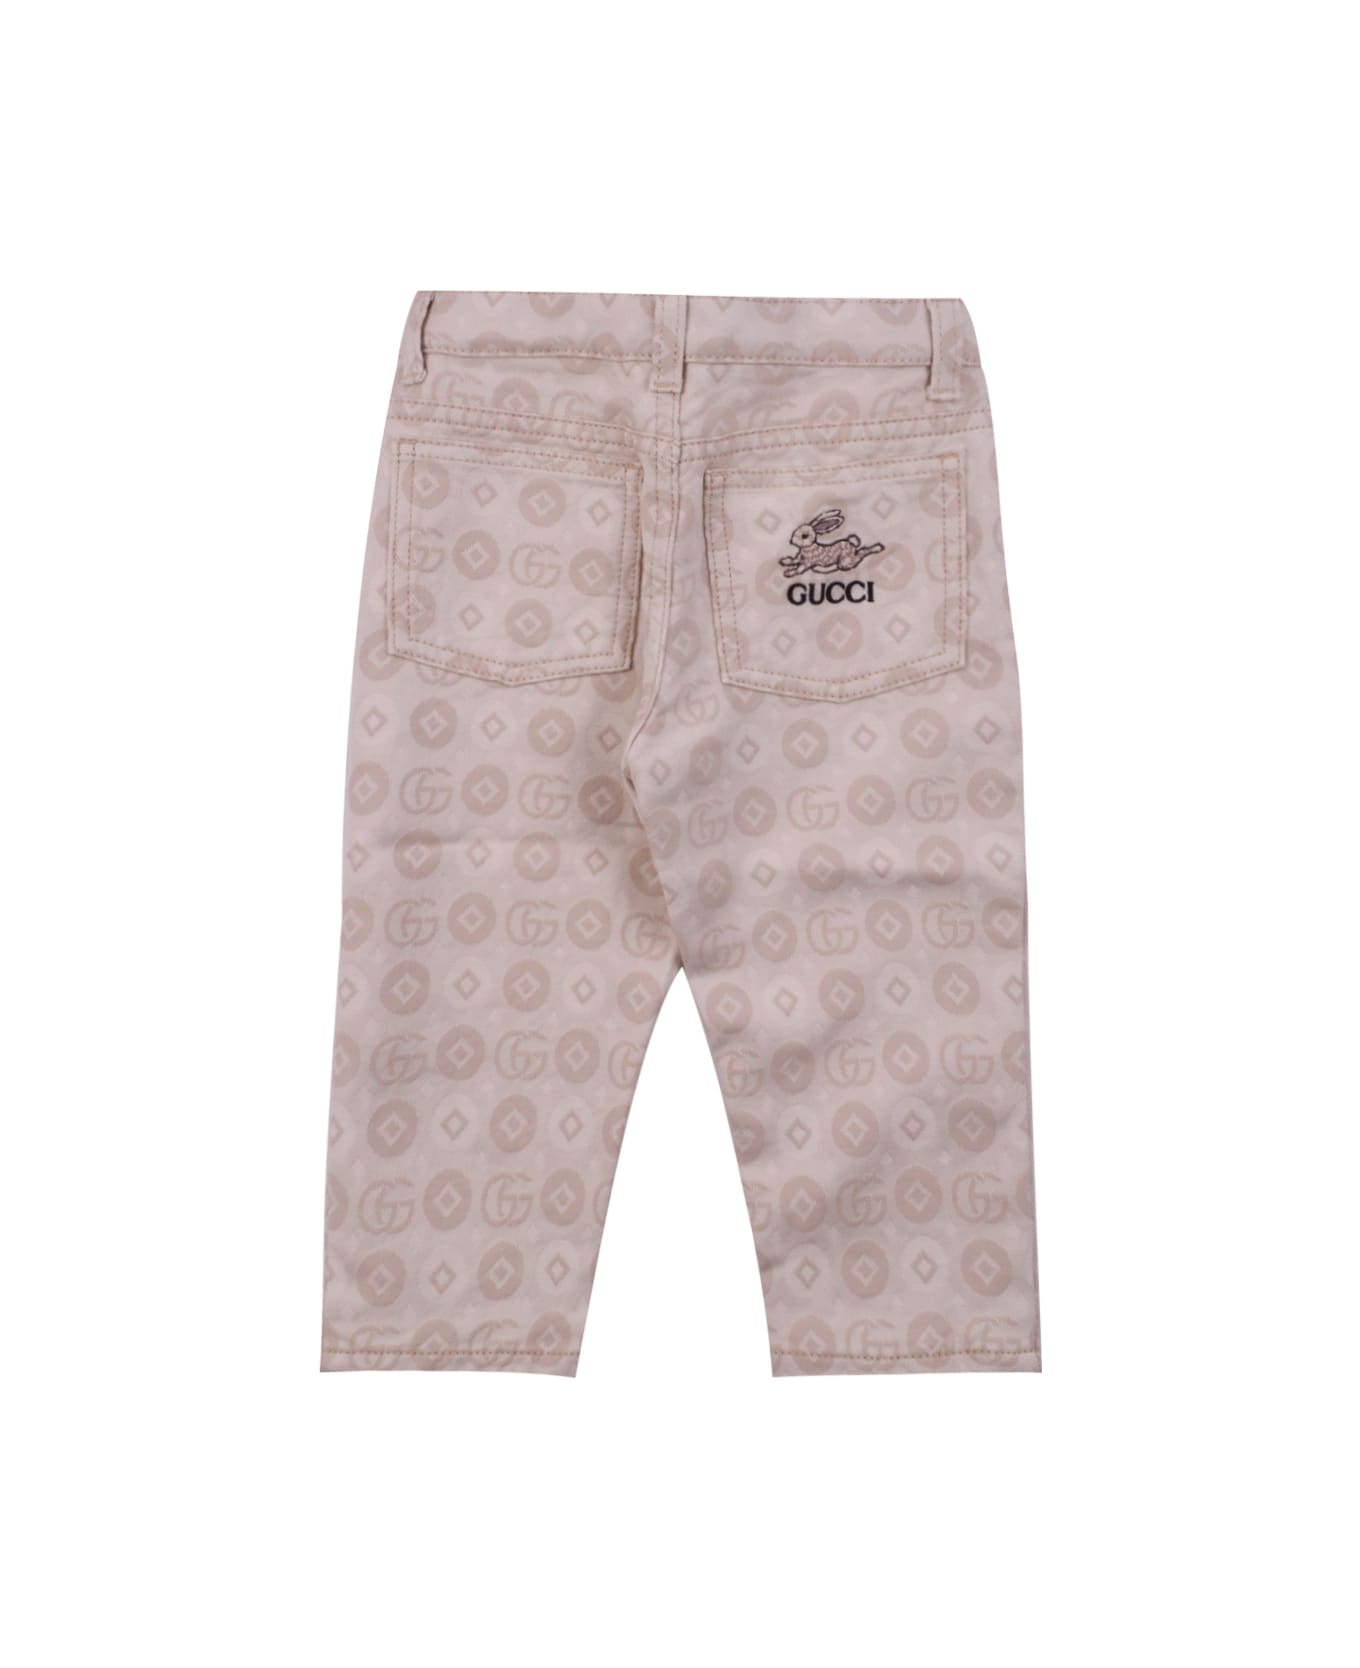 Gucci Double G Cotton Pants - Beige